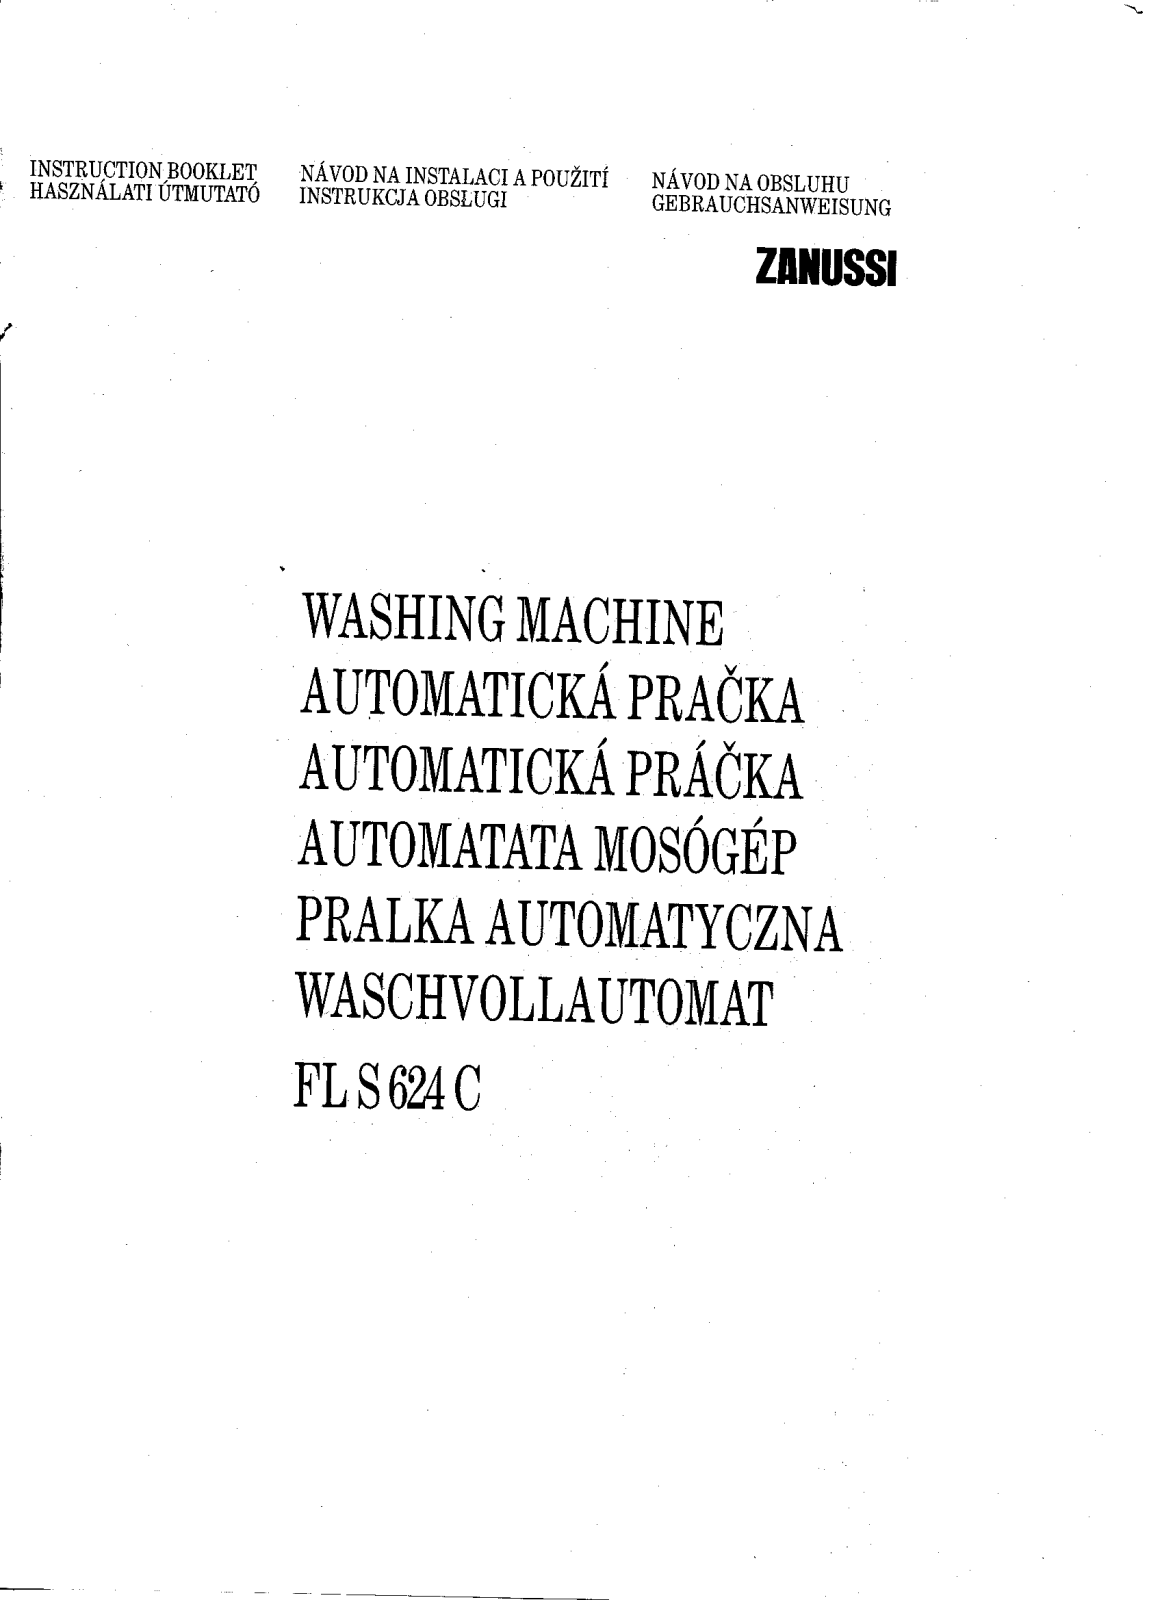 Zanussi FLS624C User Manual